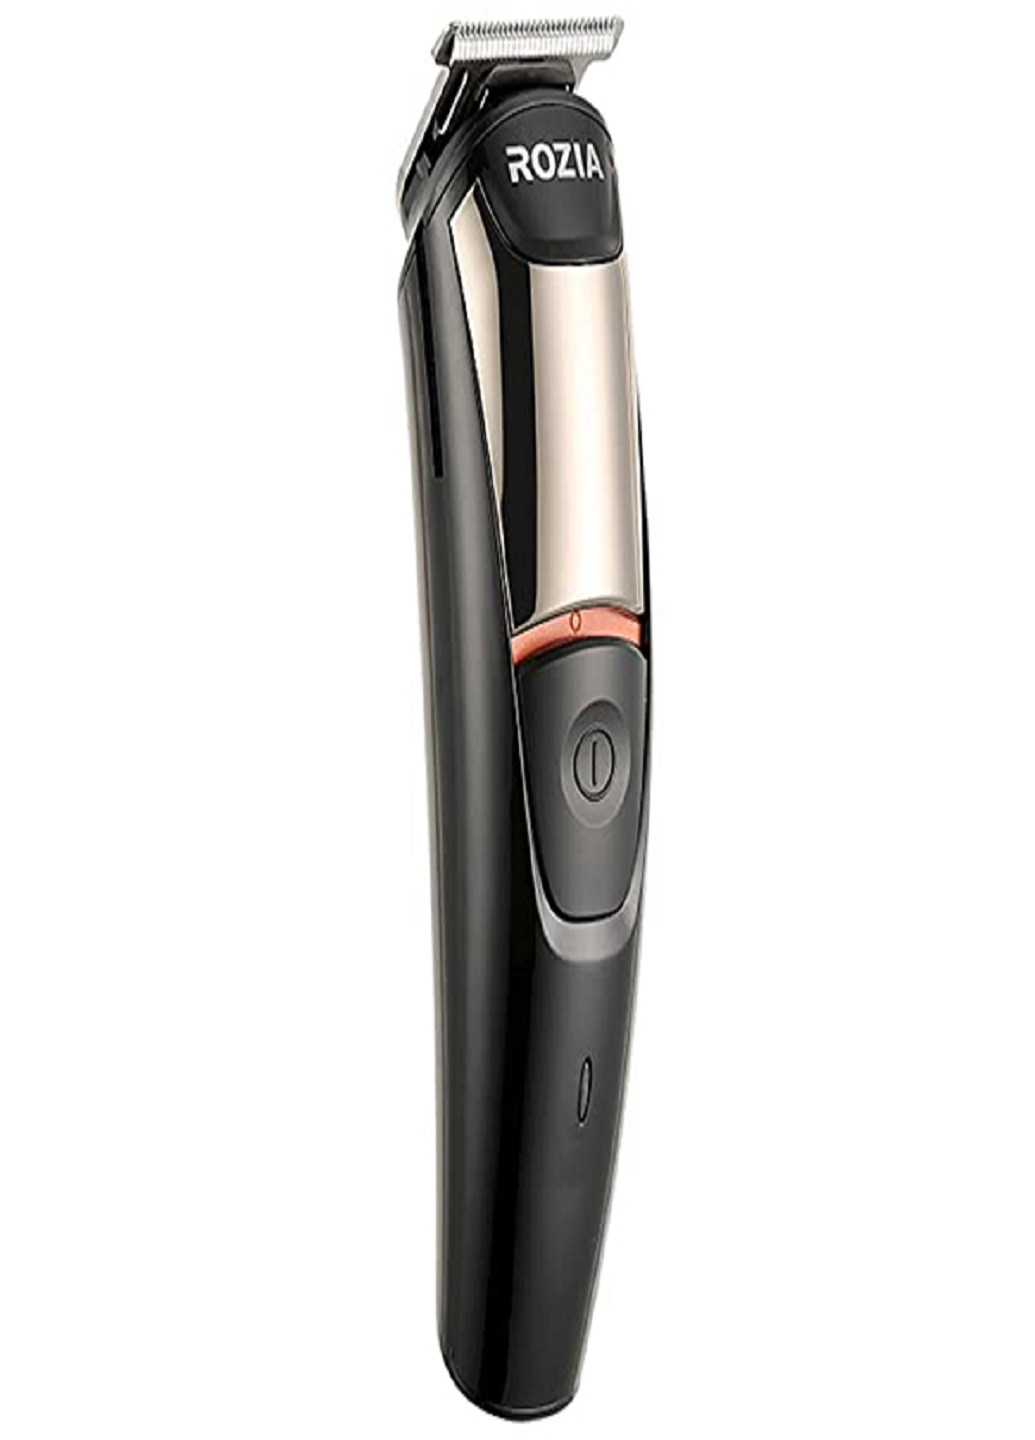 Триммер стайлер для стрижки волос и бороды профессиональный аккумуляторный беспроводной 6в1 HQ-5900 VTech (252814628)